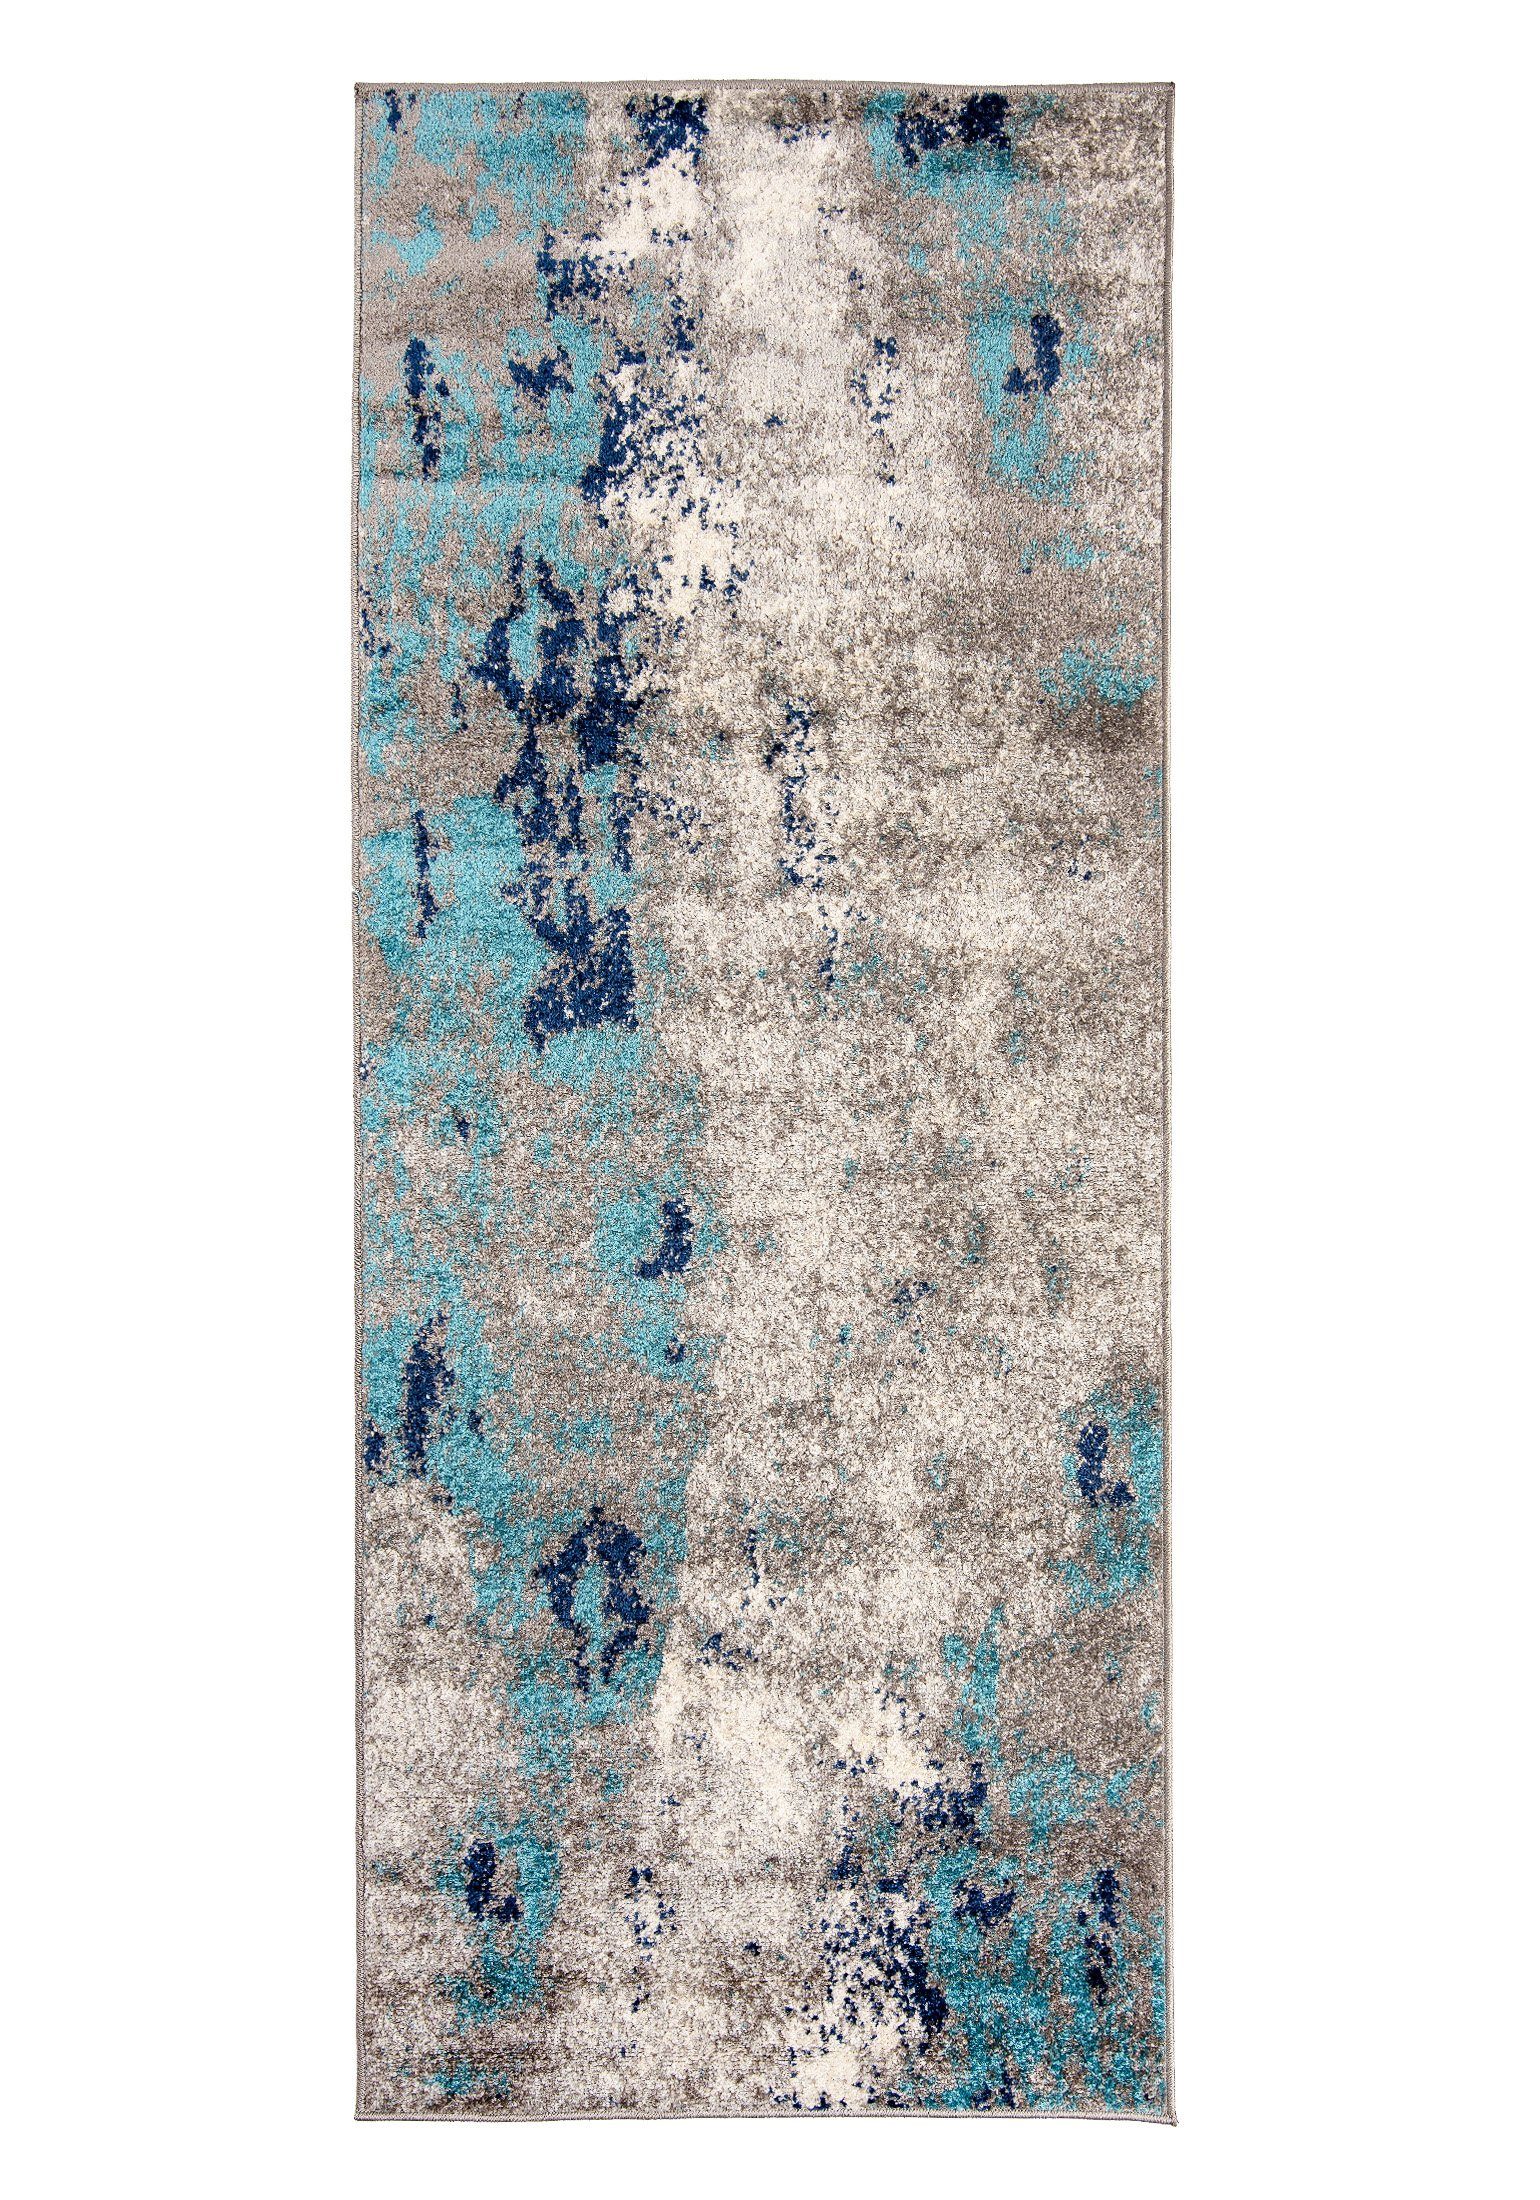 Designteppich Modern Teppich Abstrakt Muster Blau Grau farbe - Kurzflor, Mazovia, 120 x 170 cm, Geeignet für Fußbodenheizung, Höhe 7 mm, Kurzflor